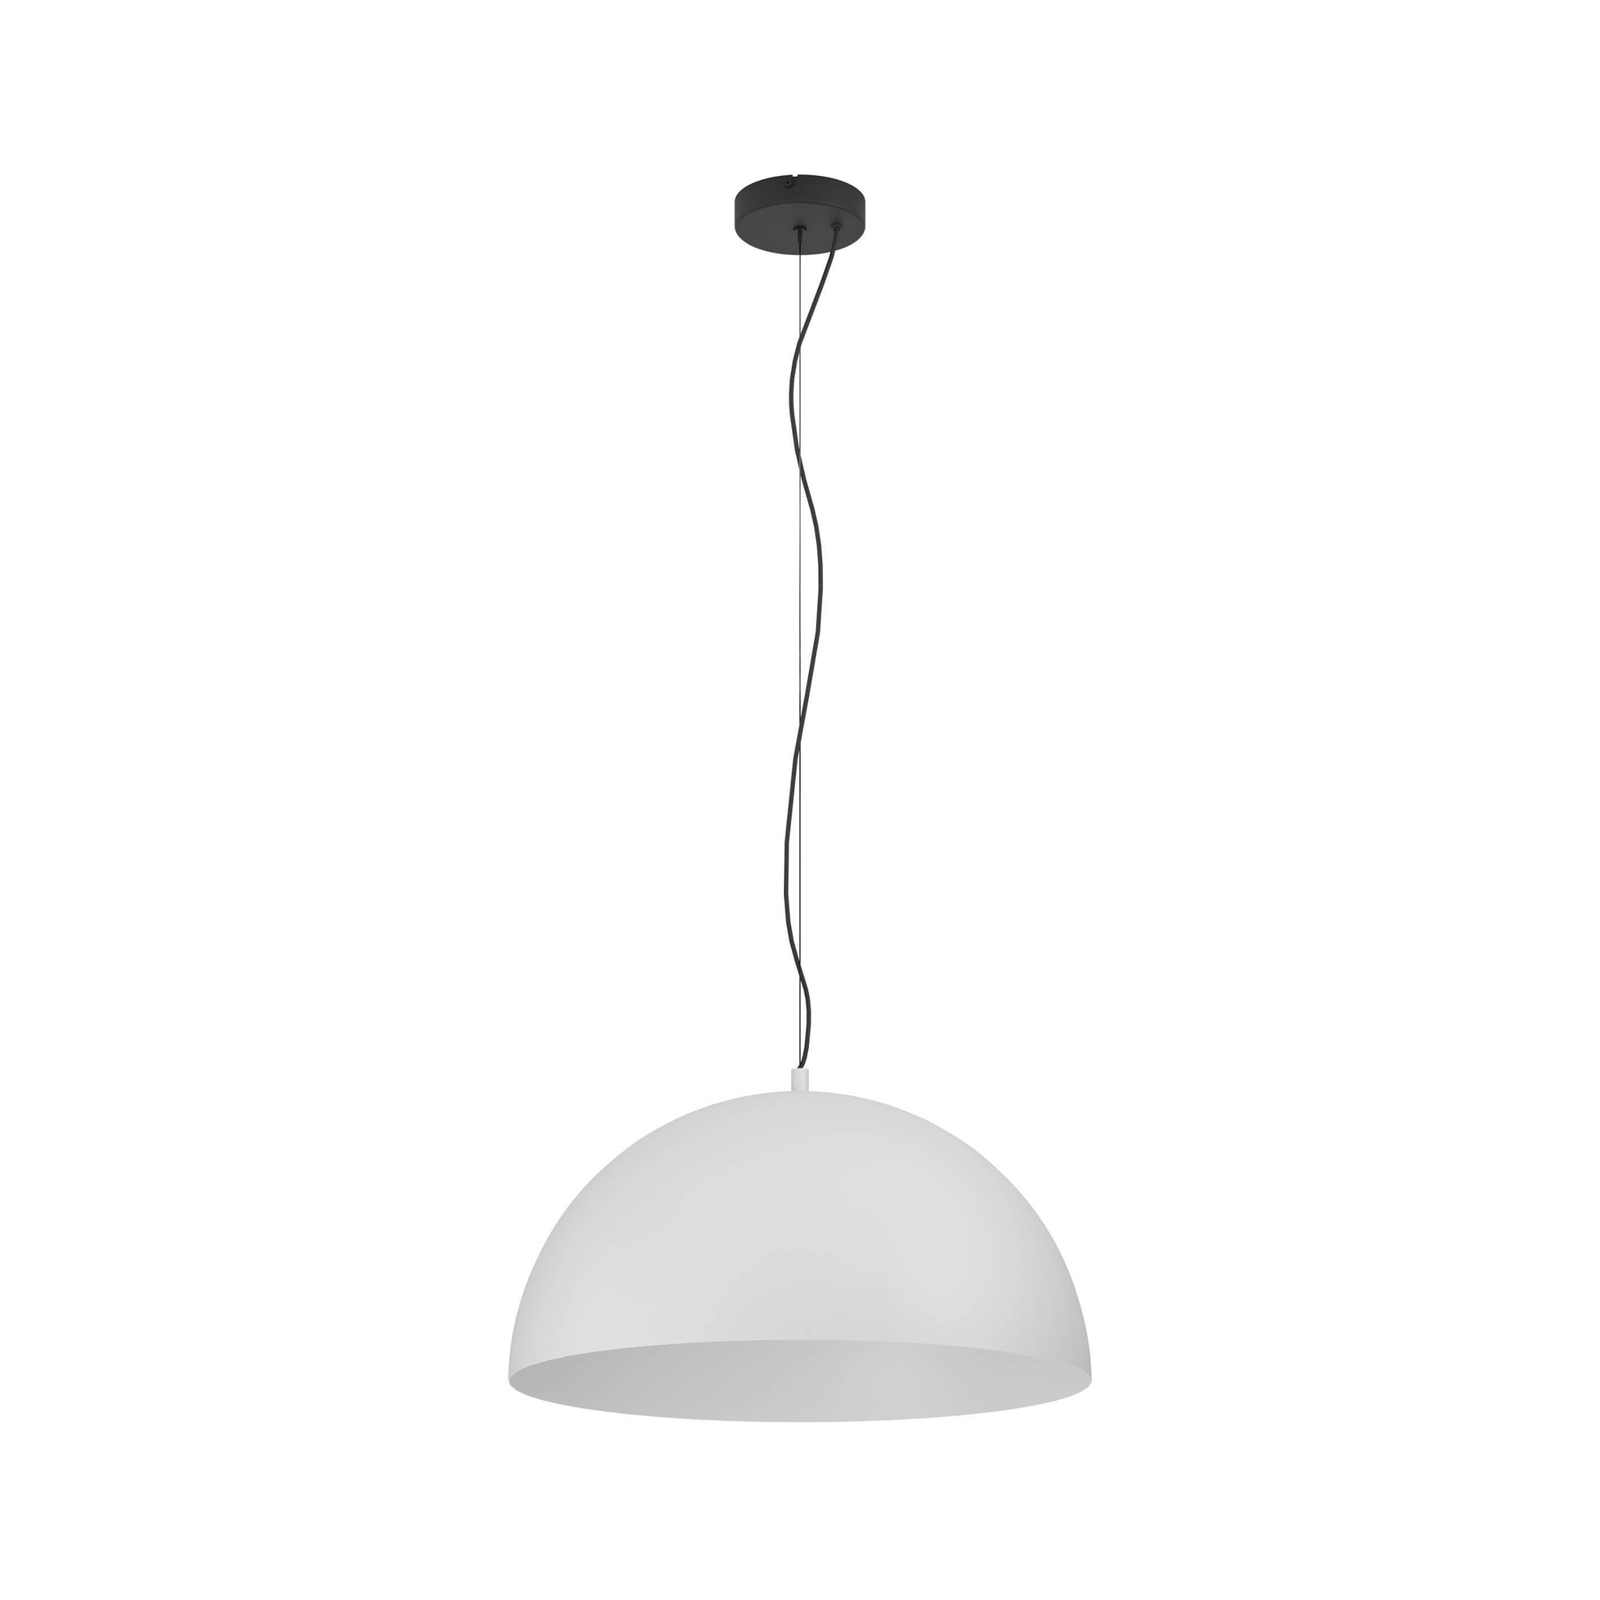 Gaetano 1 lampă suspendată, Ø 53 cm, gri/alb, oțel